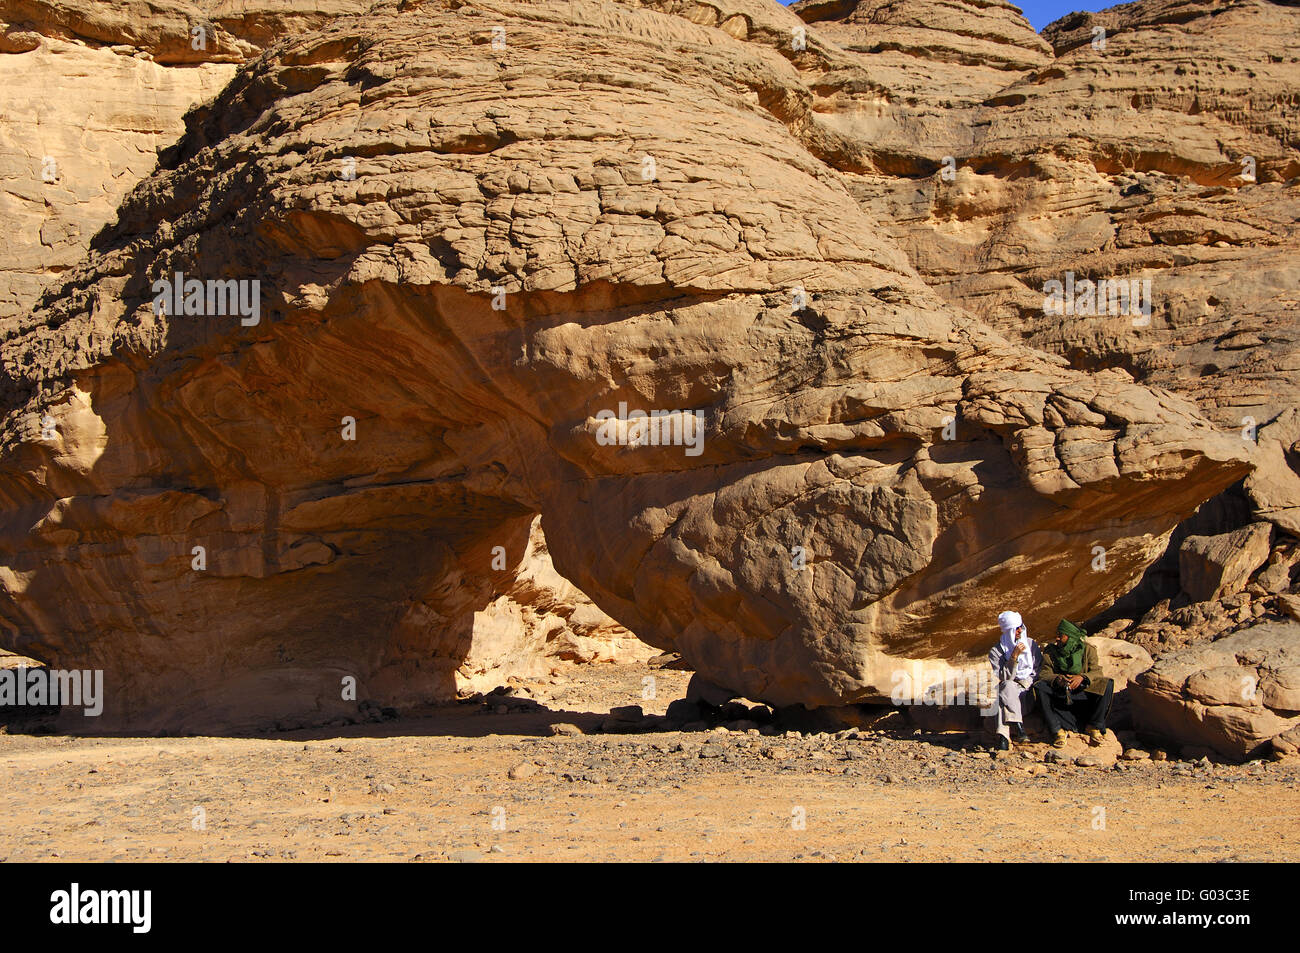 Bedouin uomini seduti su un arco di roccia, il deserto del Sahara Foto Stock